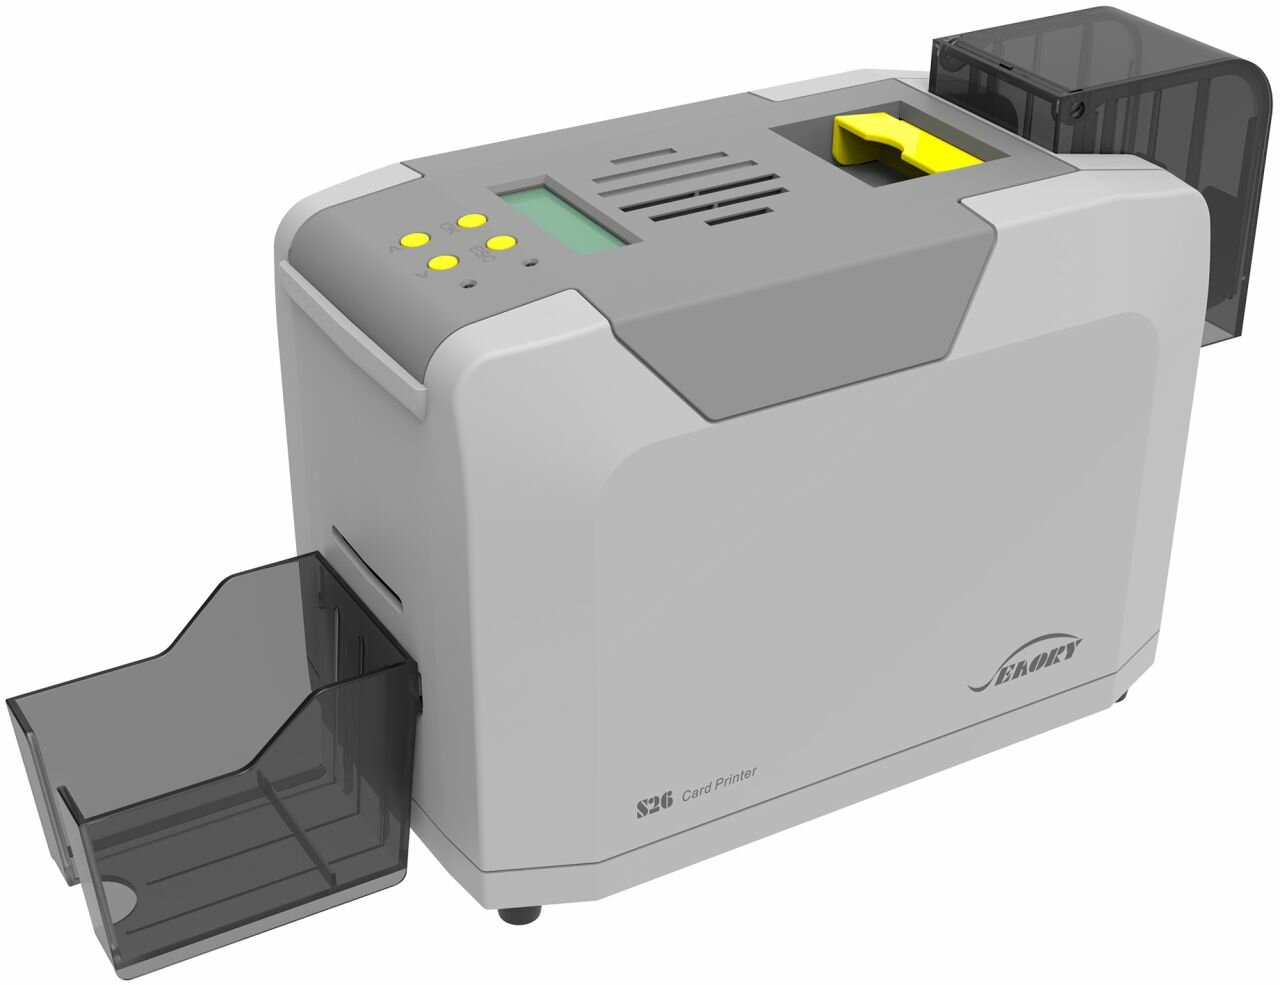 Принтер пластиковых карт Seaory S26: 300dpi x 600dpi, термосублимационная односторонняя печать, 3-18сек/карта, USB, Ethernet, RS232 (FGI.S2601M.EUZ)